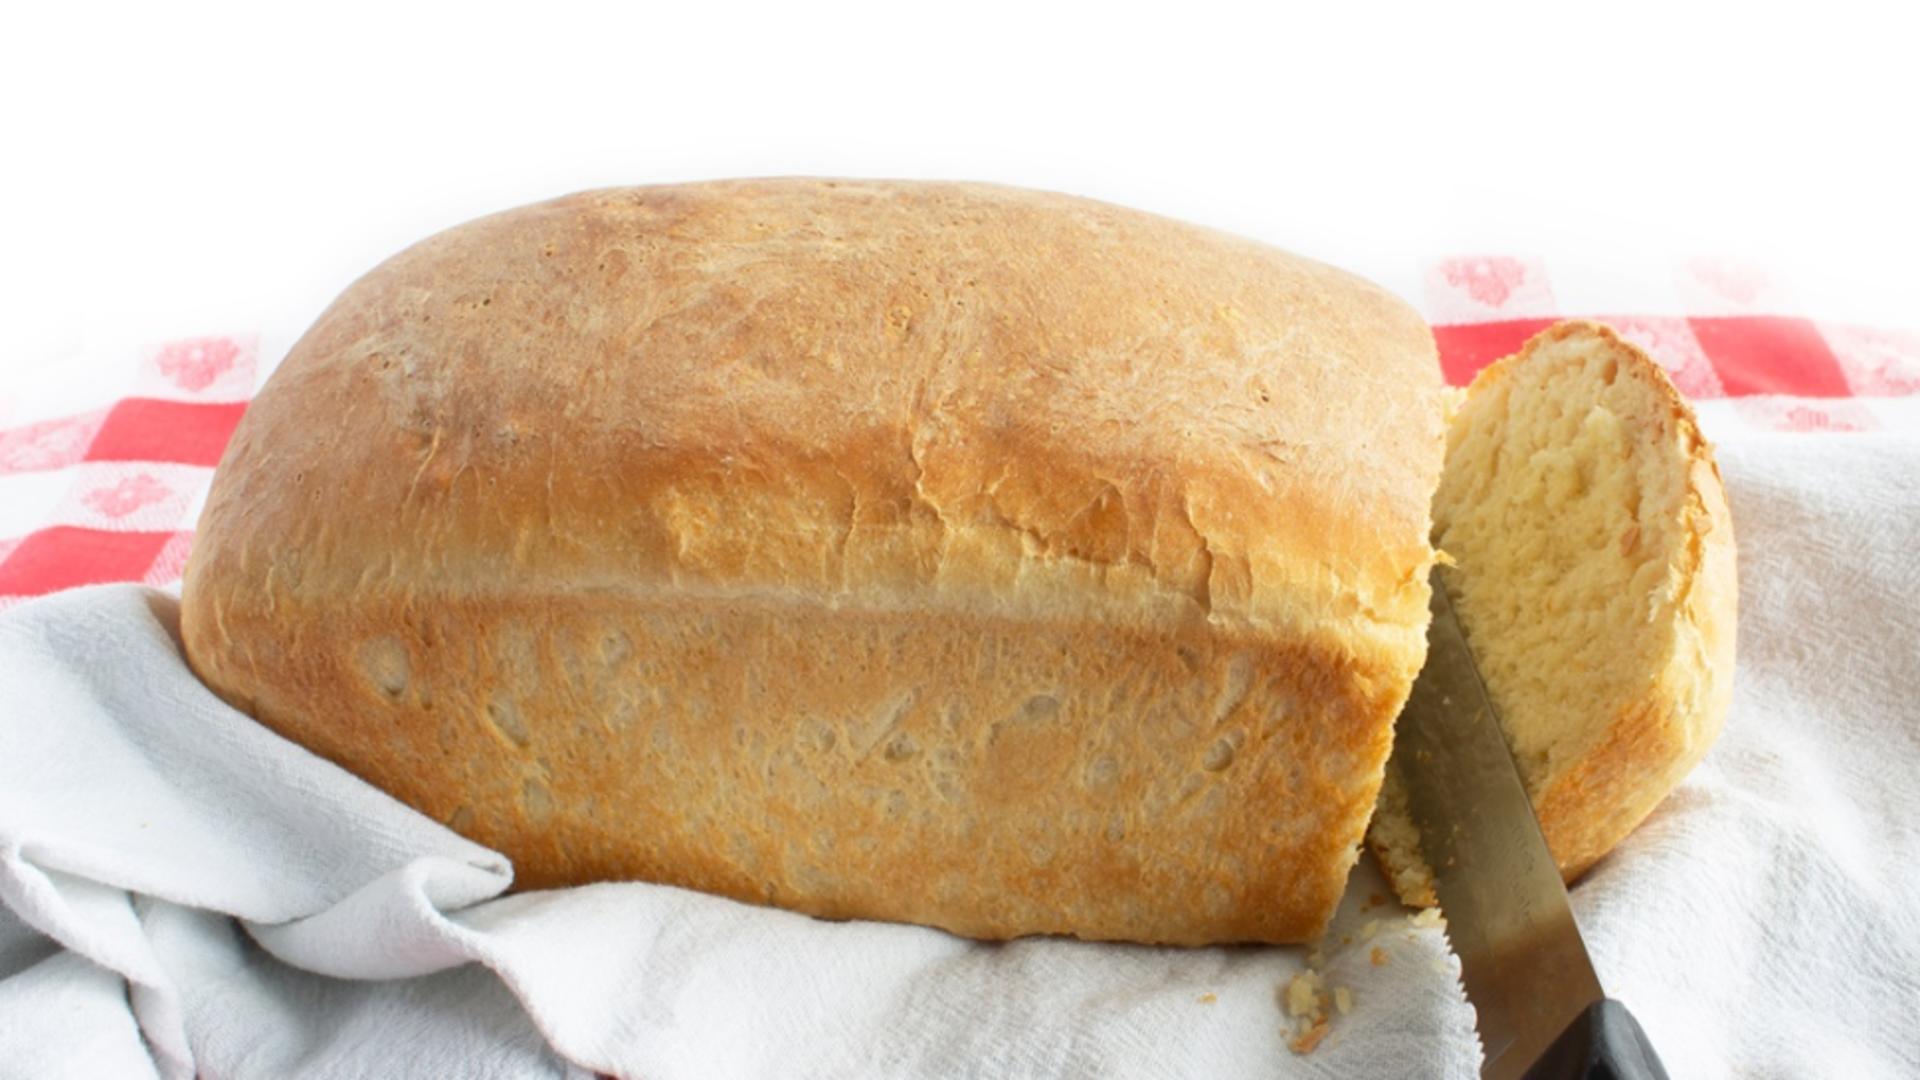 Pâine cu lapte bătut în aluat. Cea mai pufoasă și albă pâine